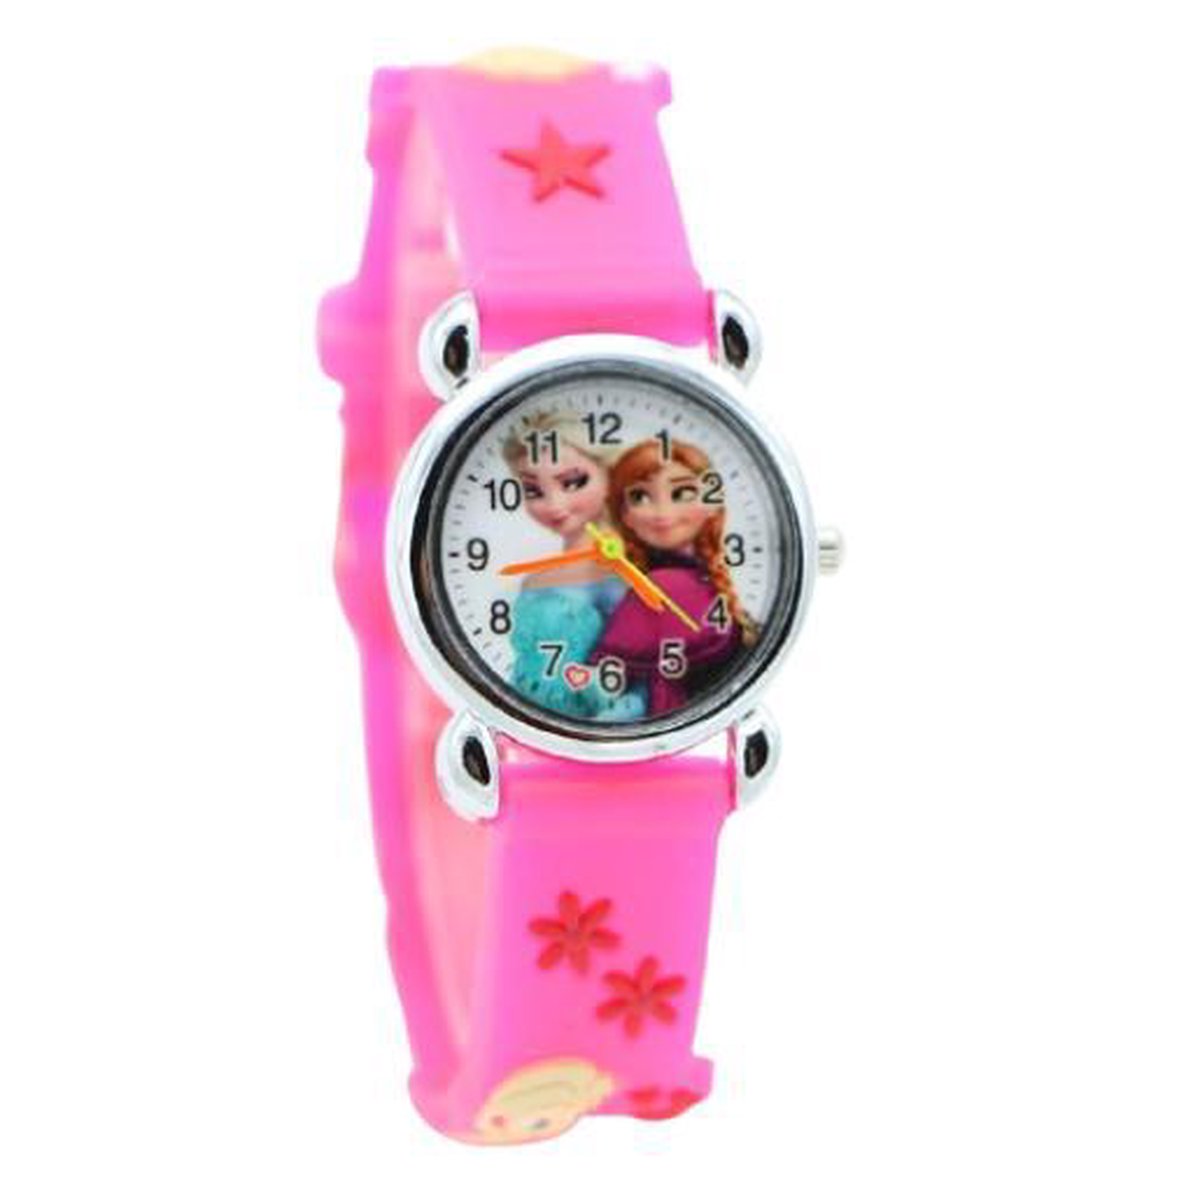 Meisjes horloge hardroze met Frozen afbeelding Elsa en Anna